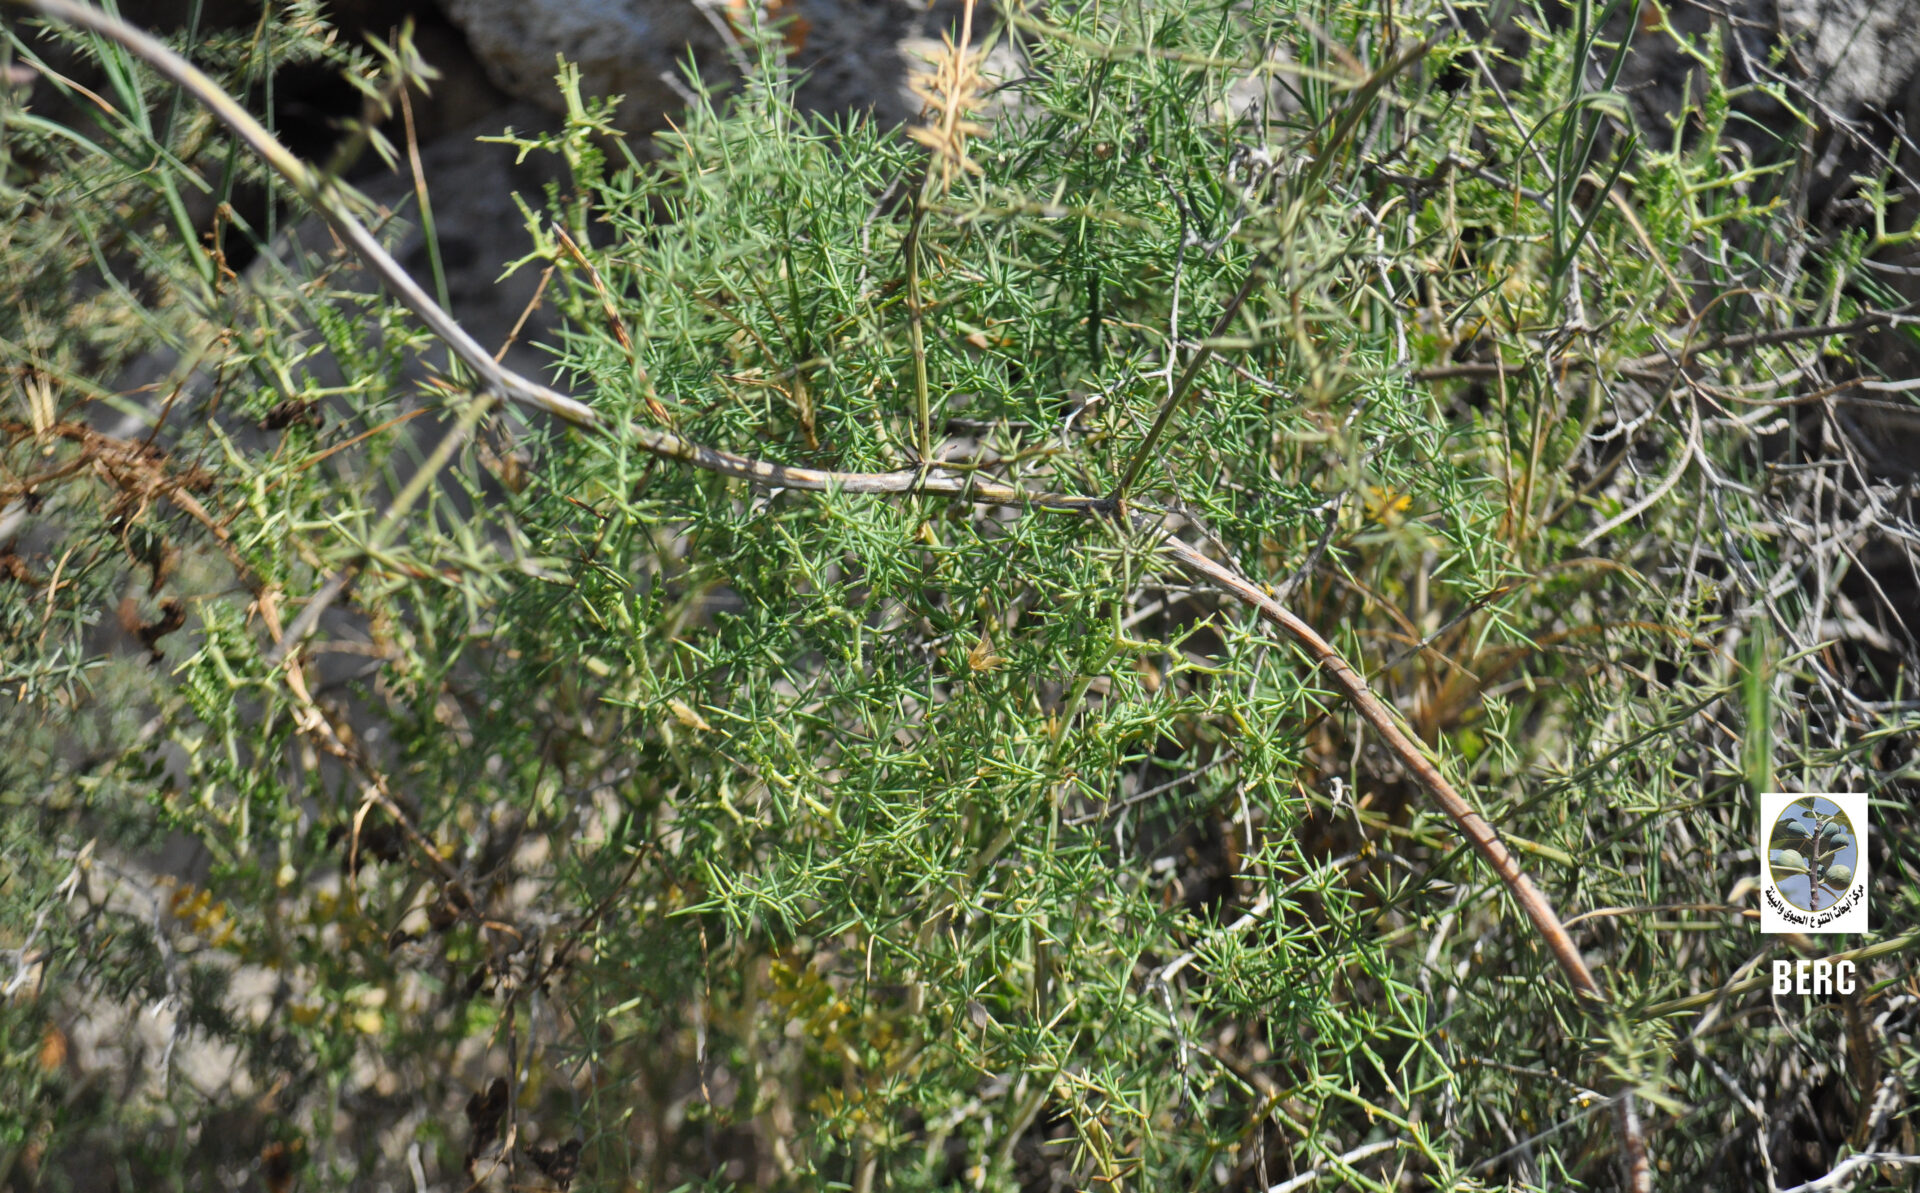 Mediterranean Asparagus, Prickly Asparagus